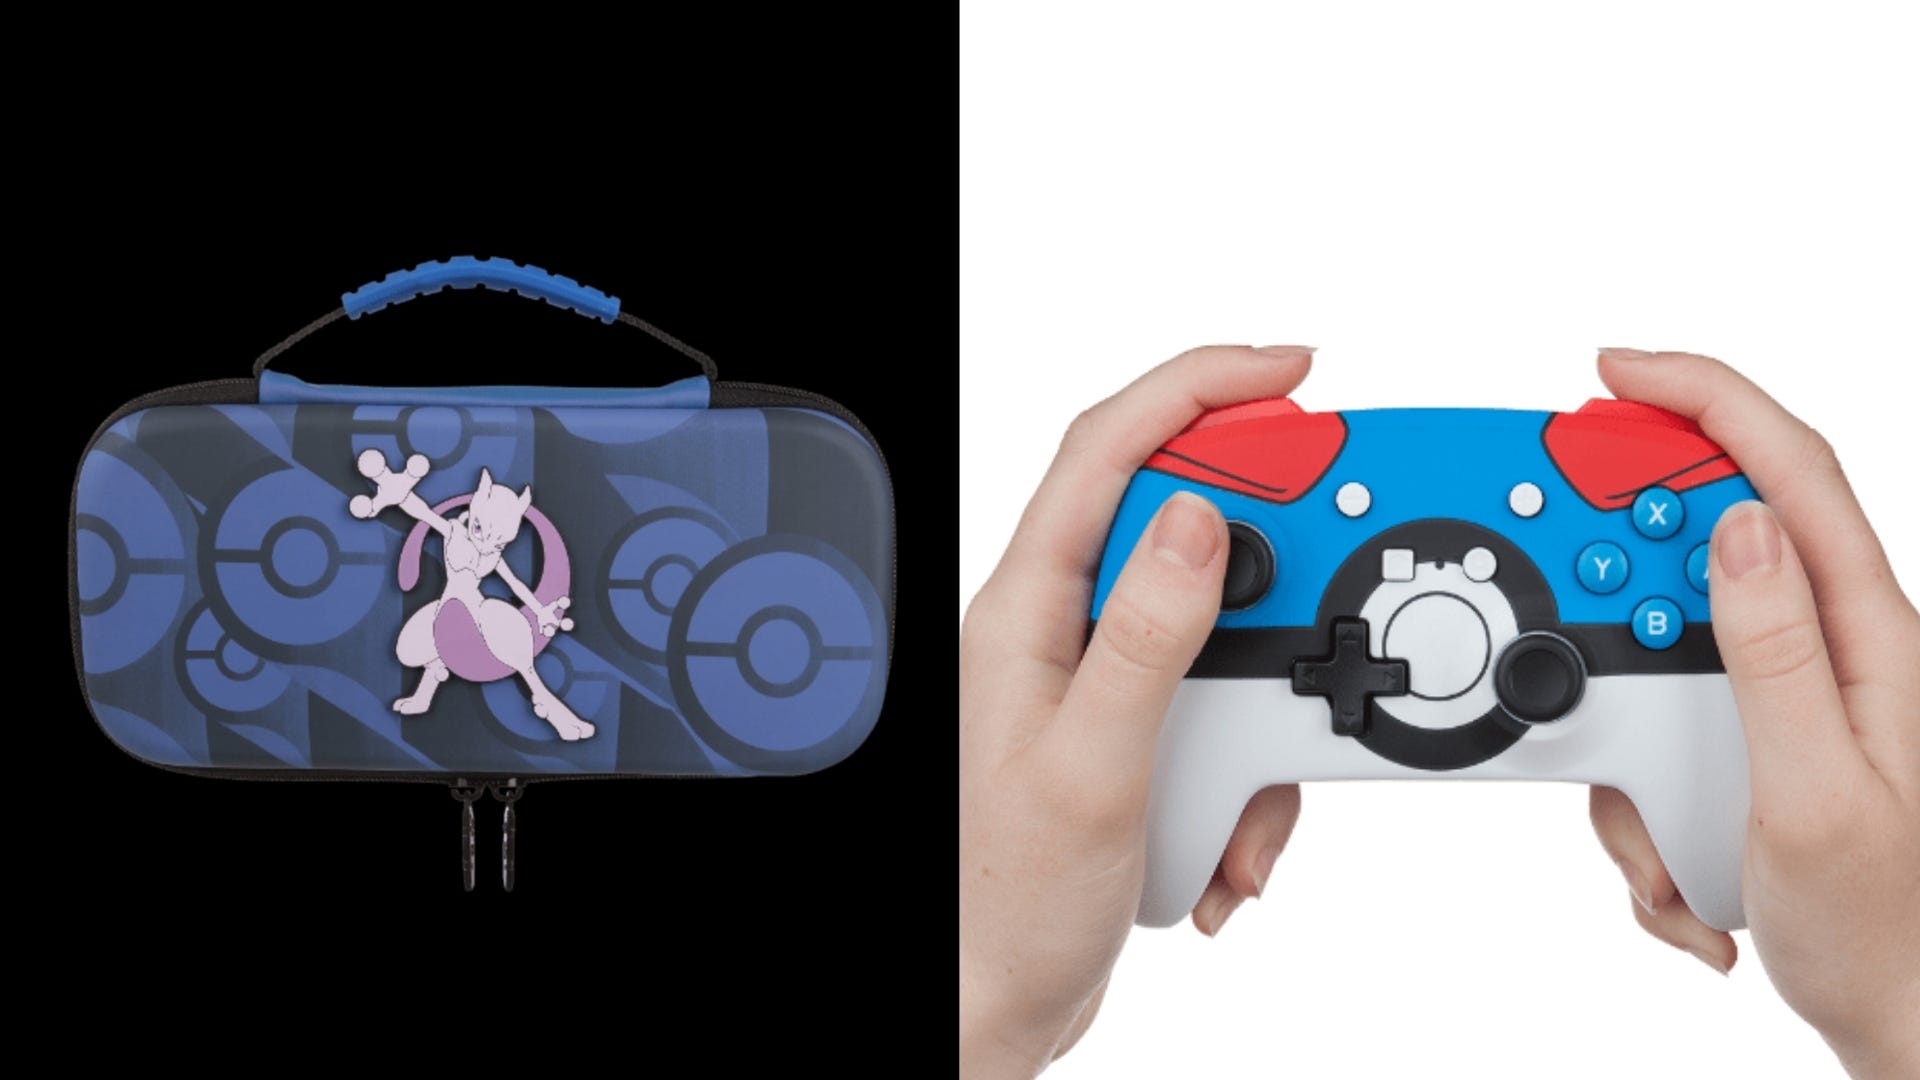 O carcasă Nintendo Switch Mewtwo și o persoană care deține un controler pentru jocuri video Poke Ball.